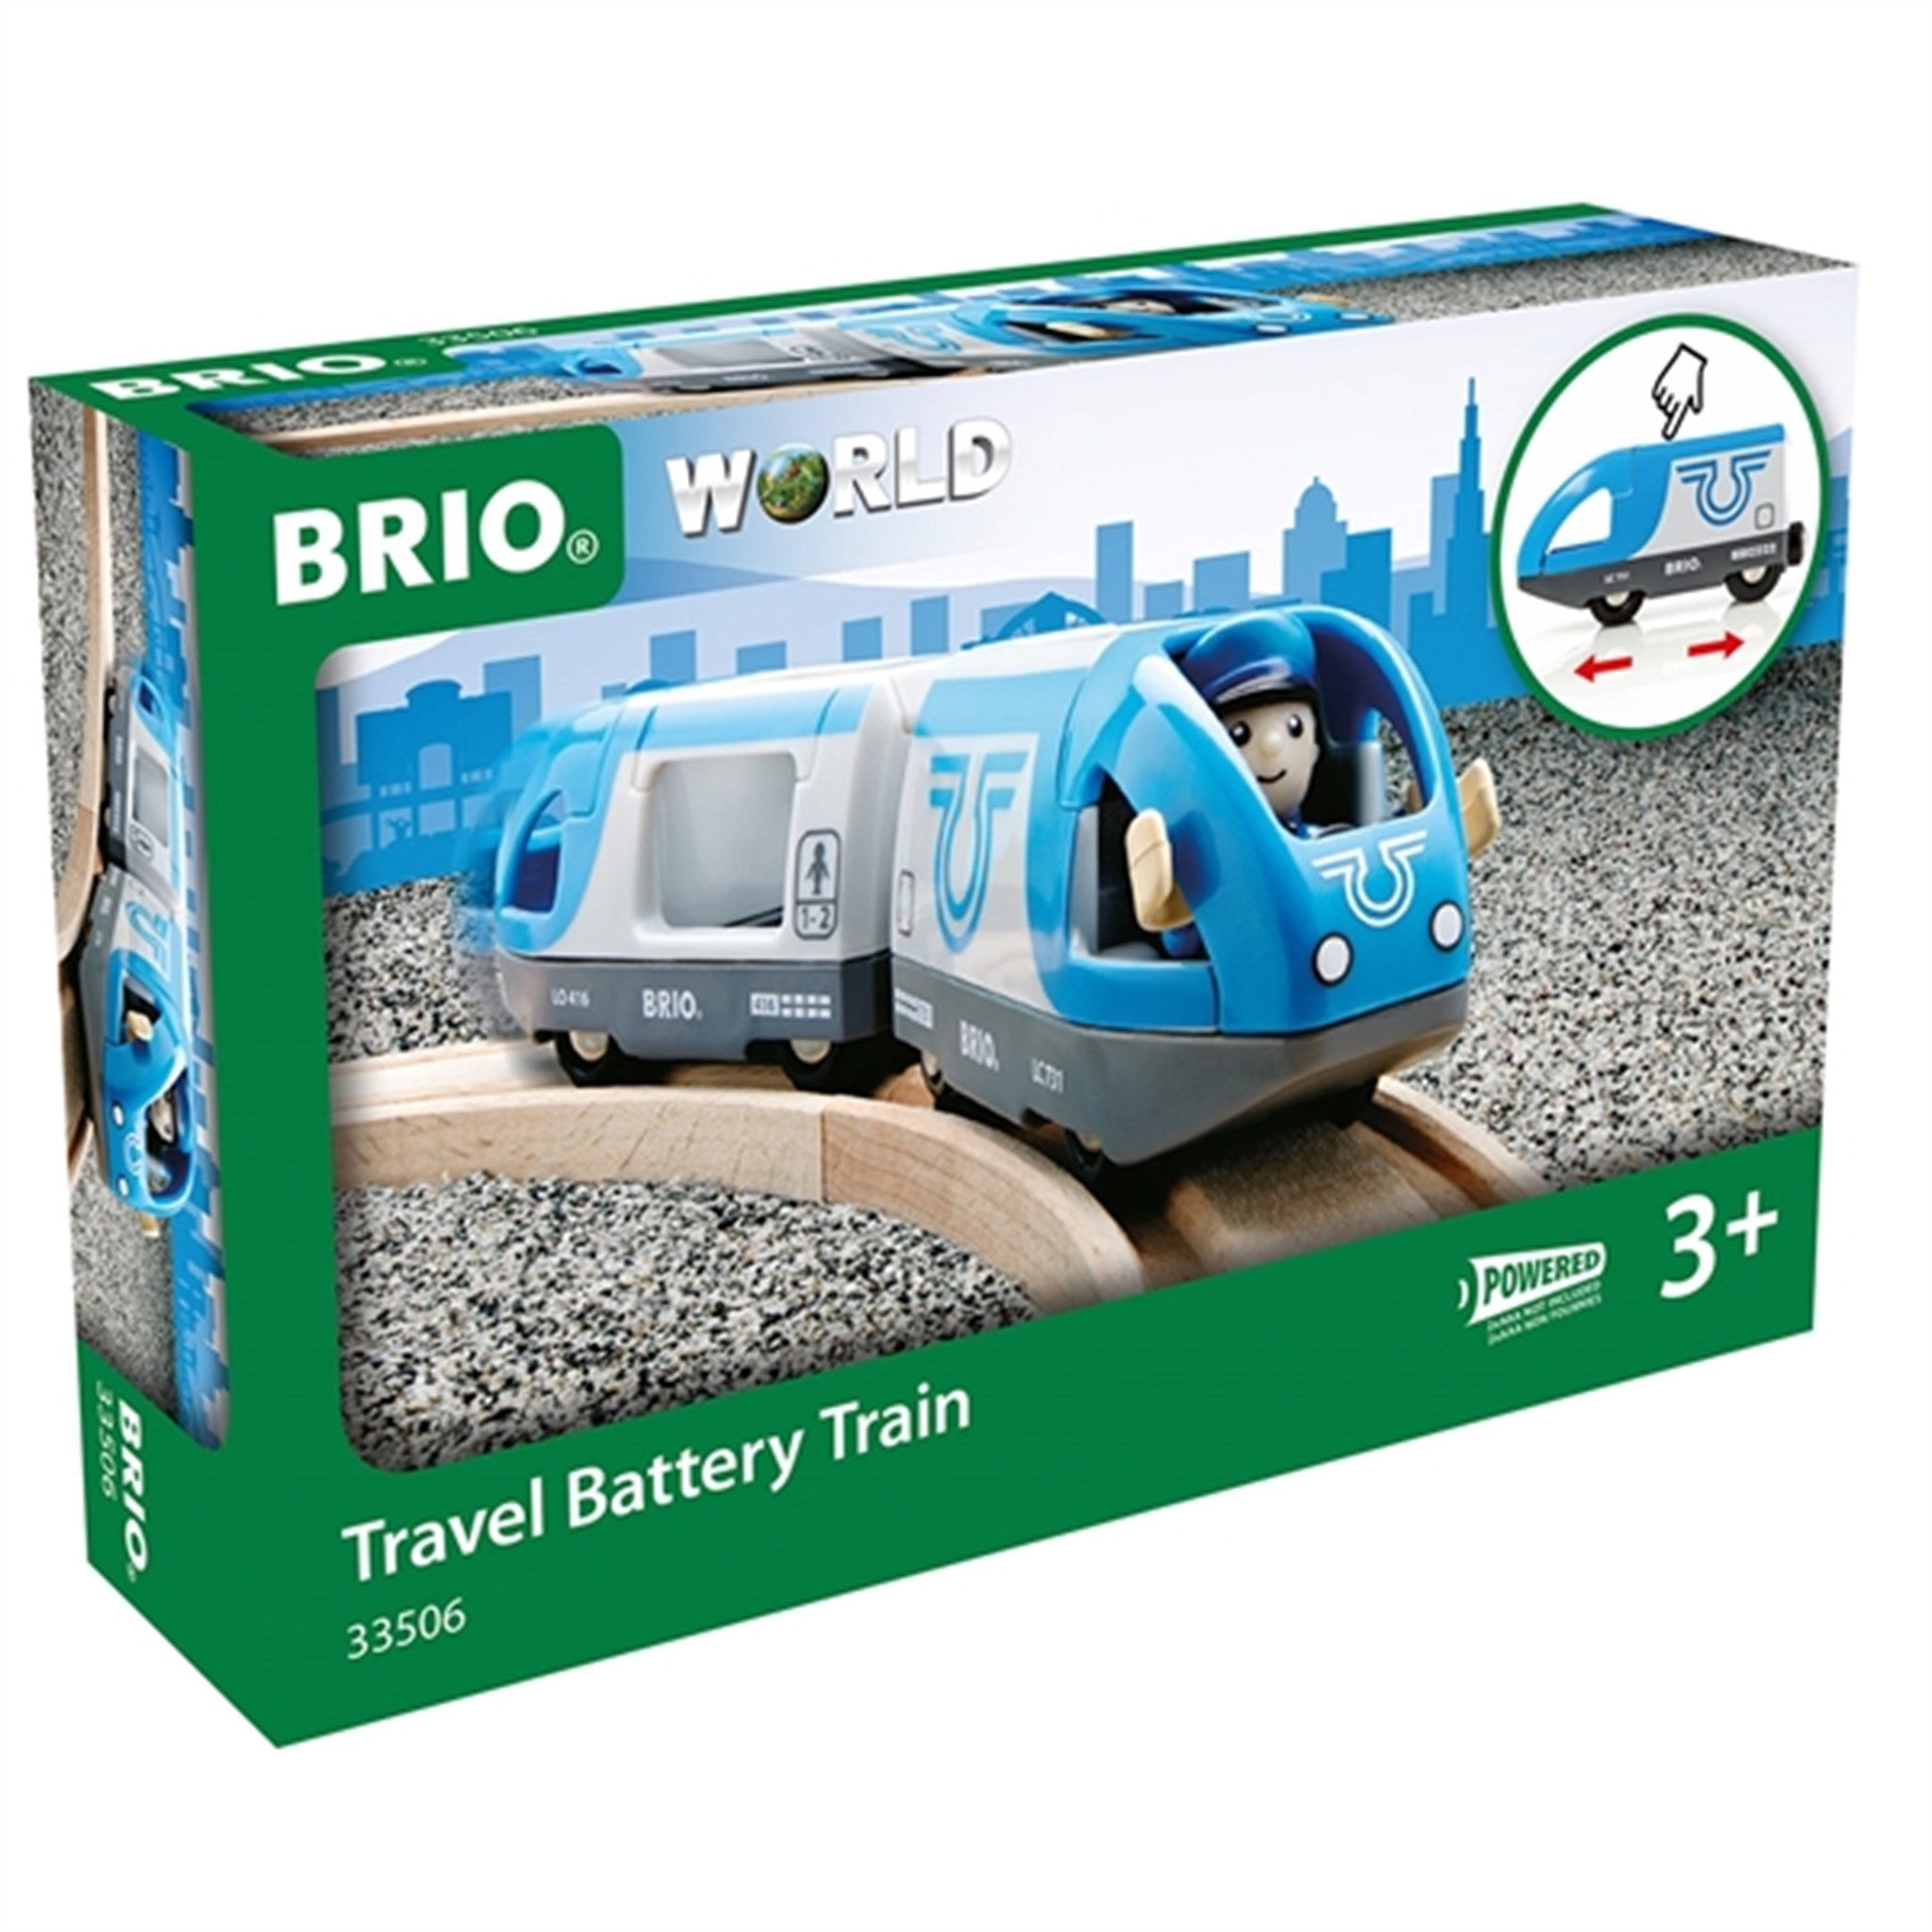 BRIO® Travel Battery Train 2